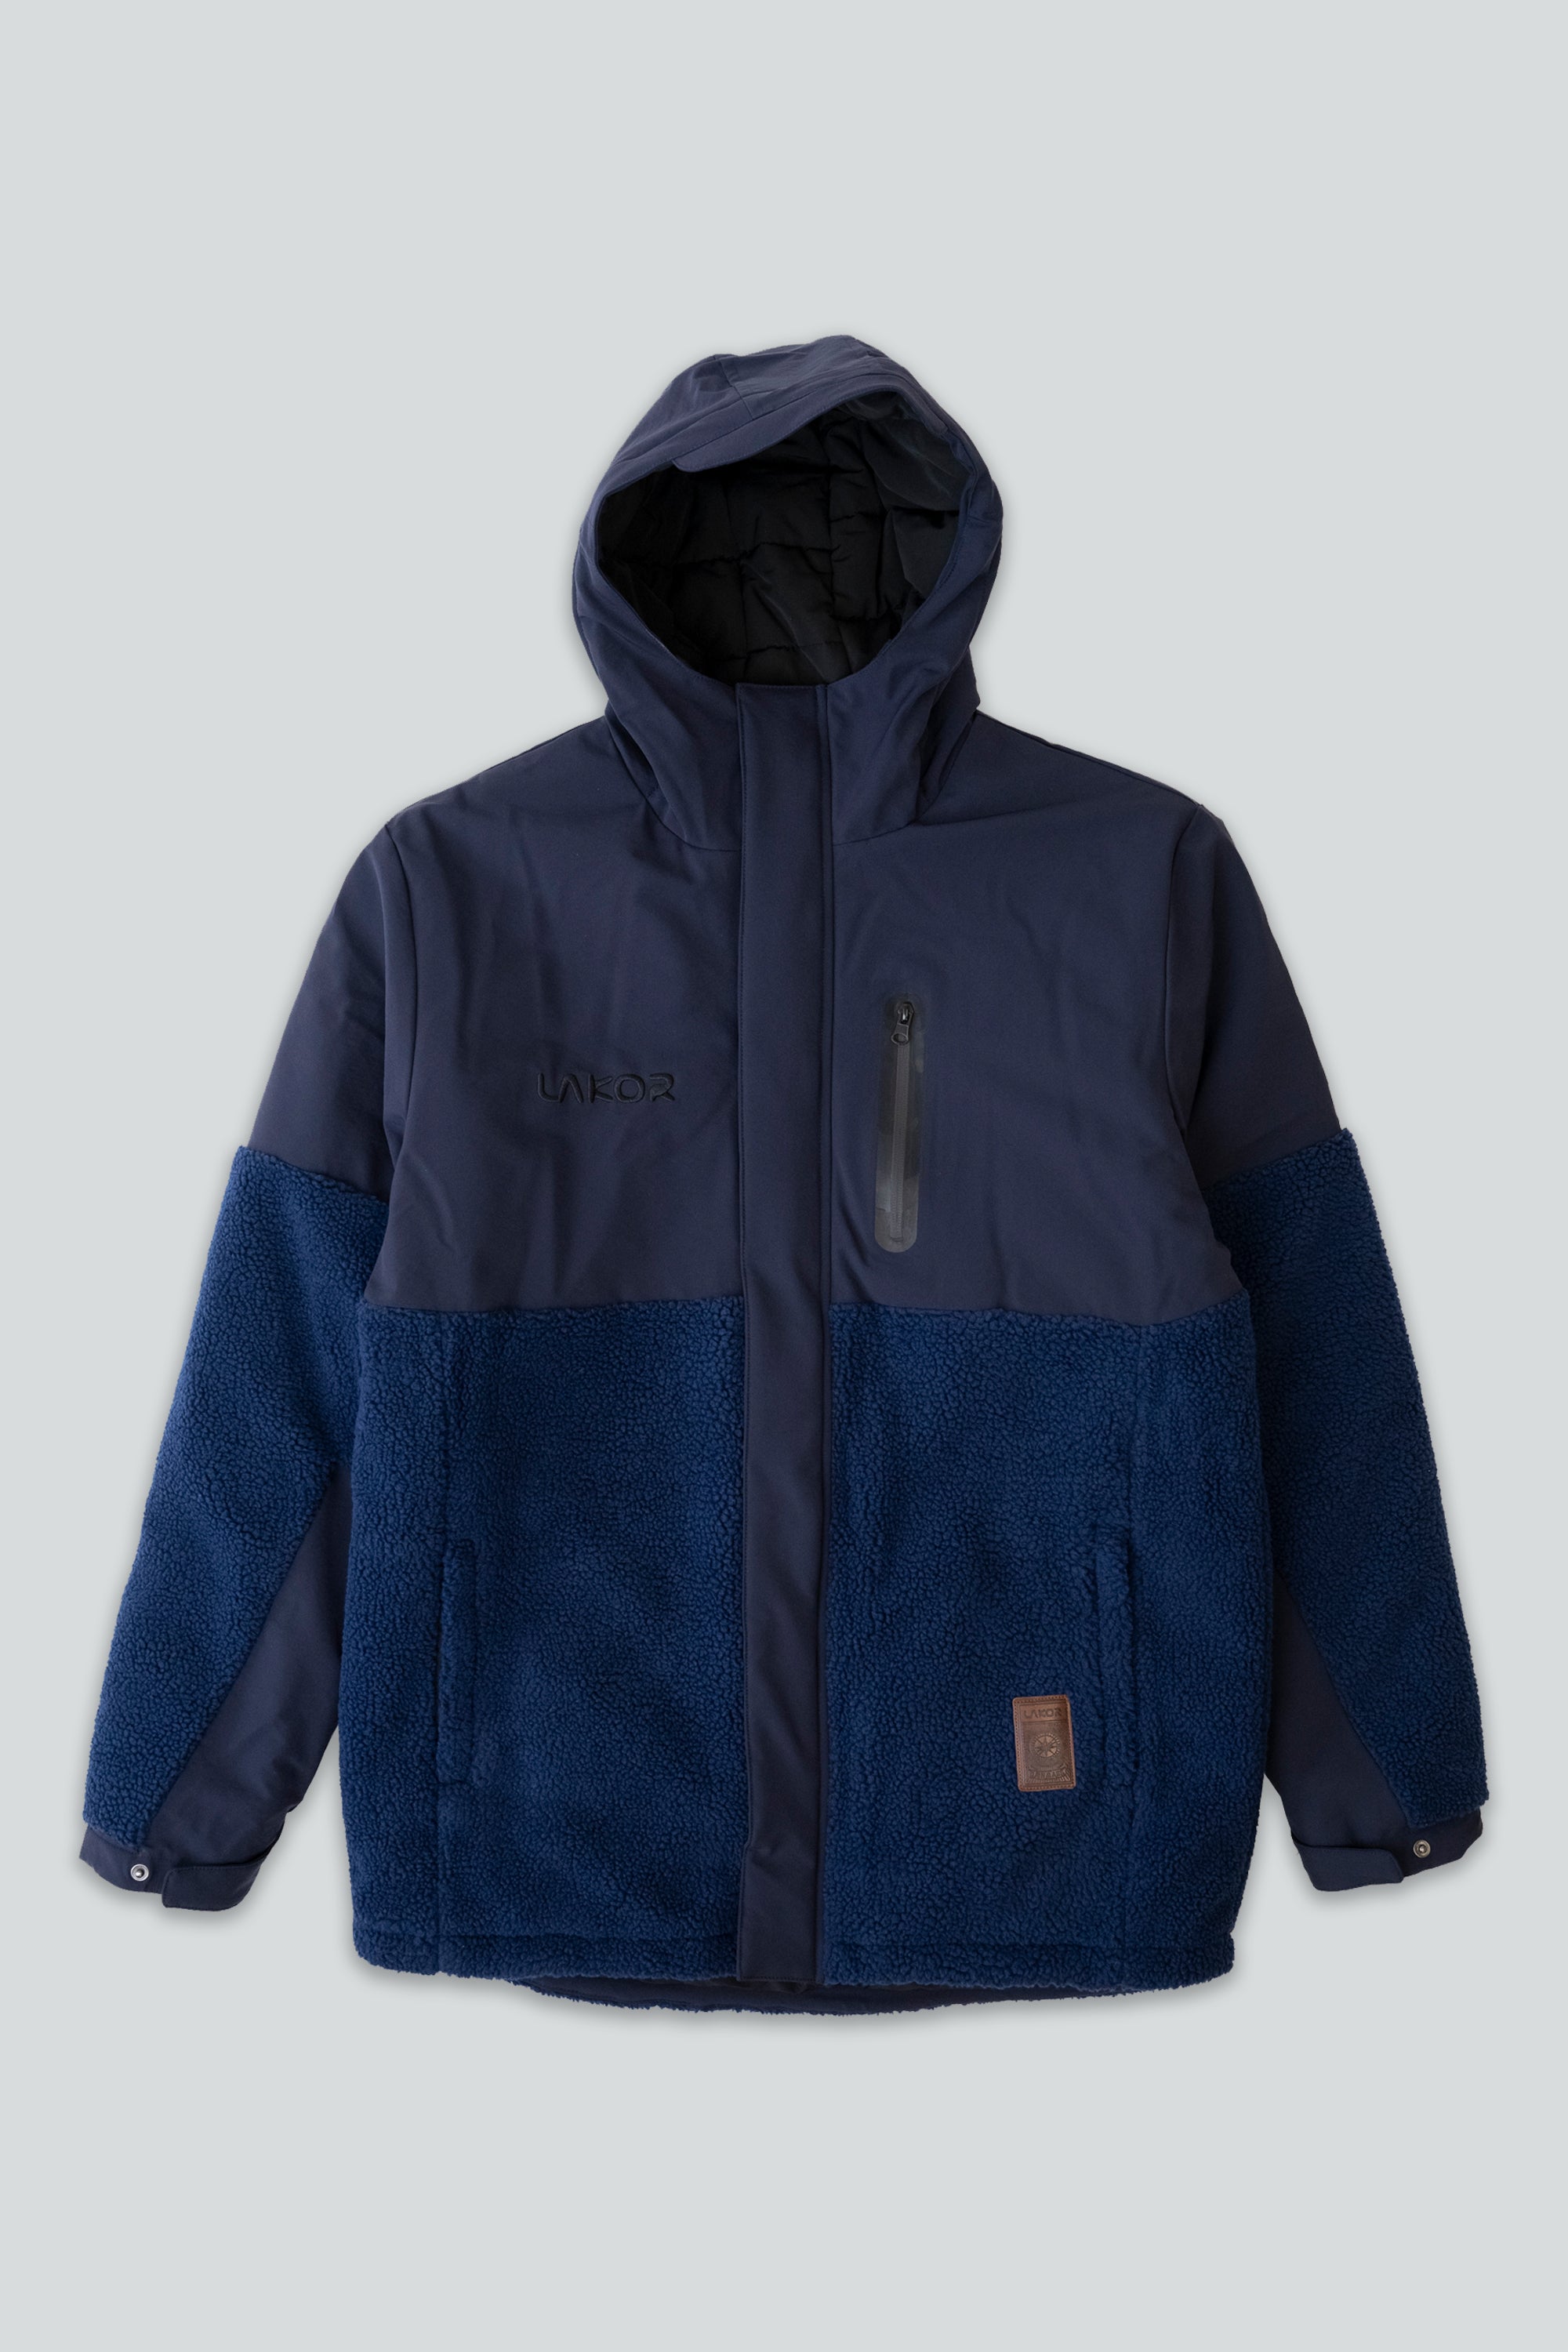 Svalbard Jacket (Blue)